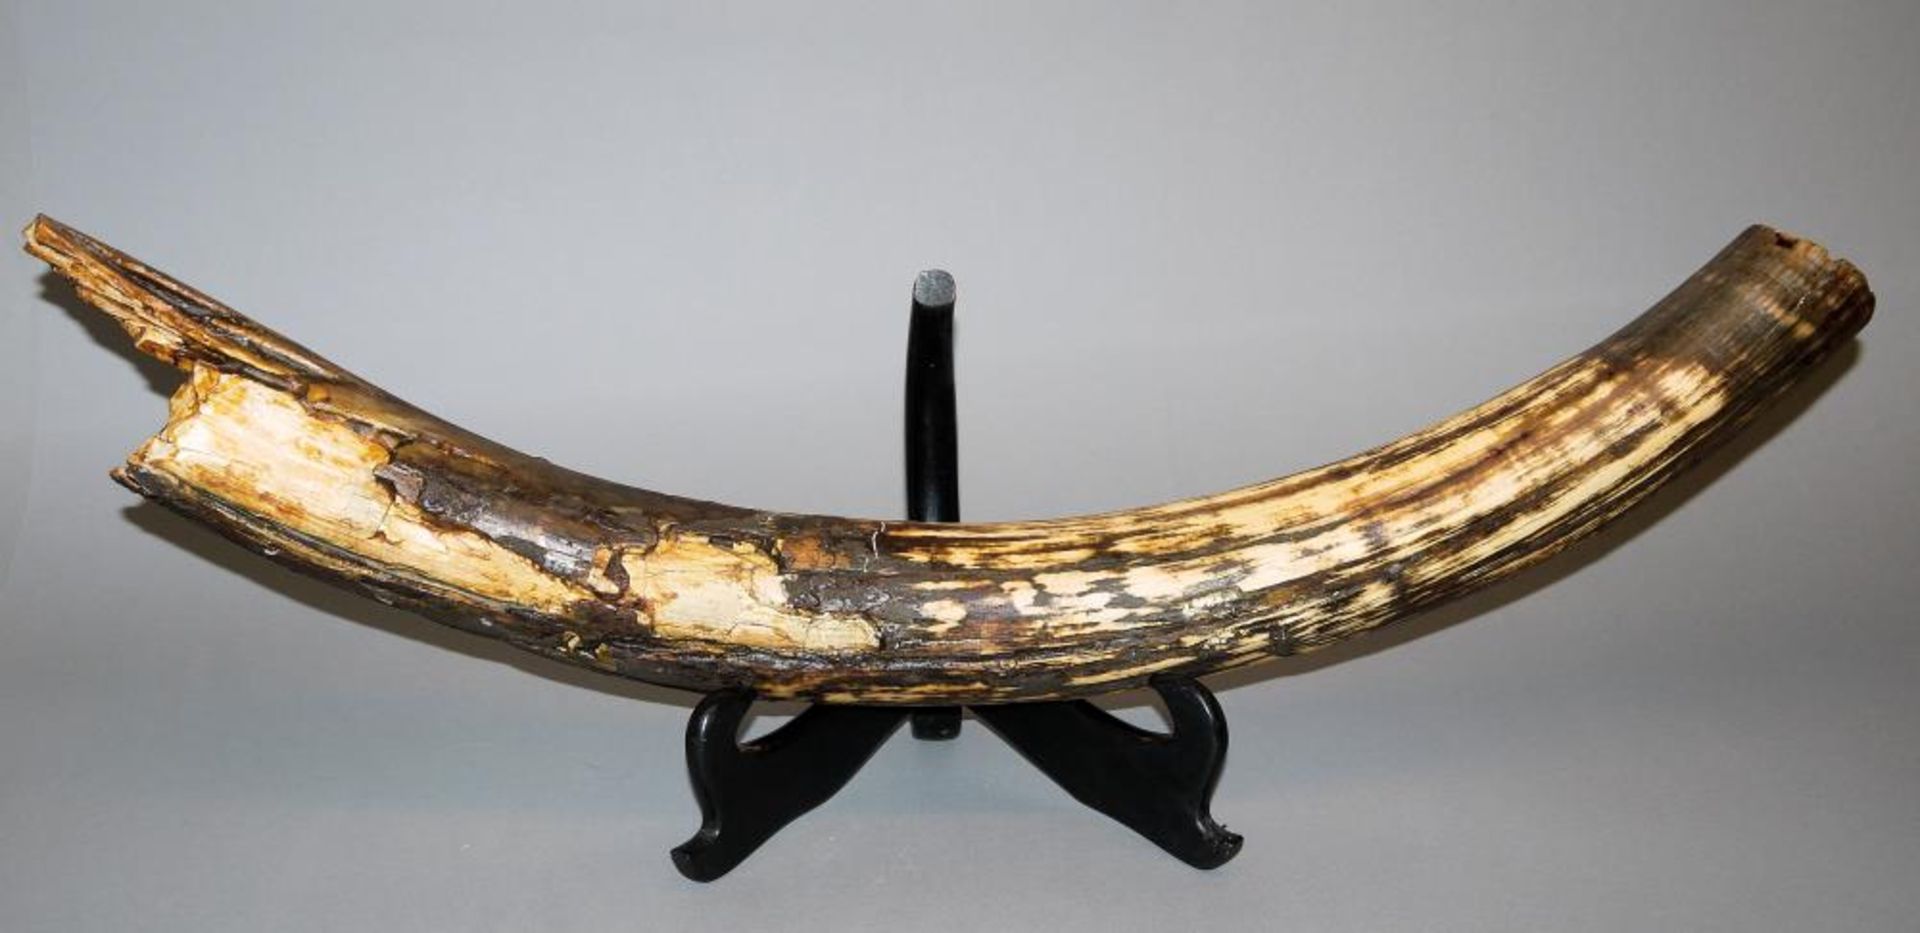 Großer Mammutzahn, Originalzustand Fragment einer Mammutzahns, L 84 cm, 4,7 kg